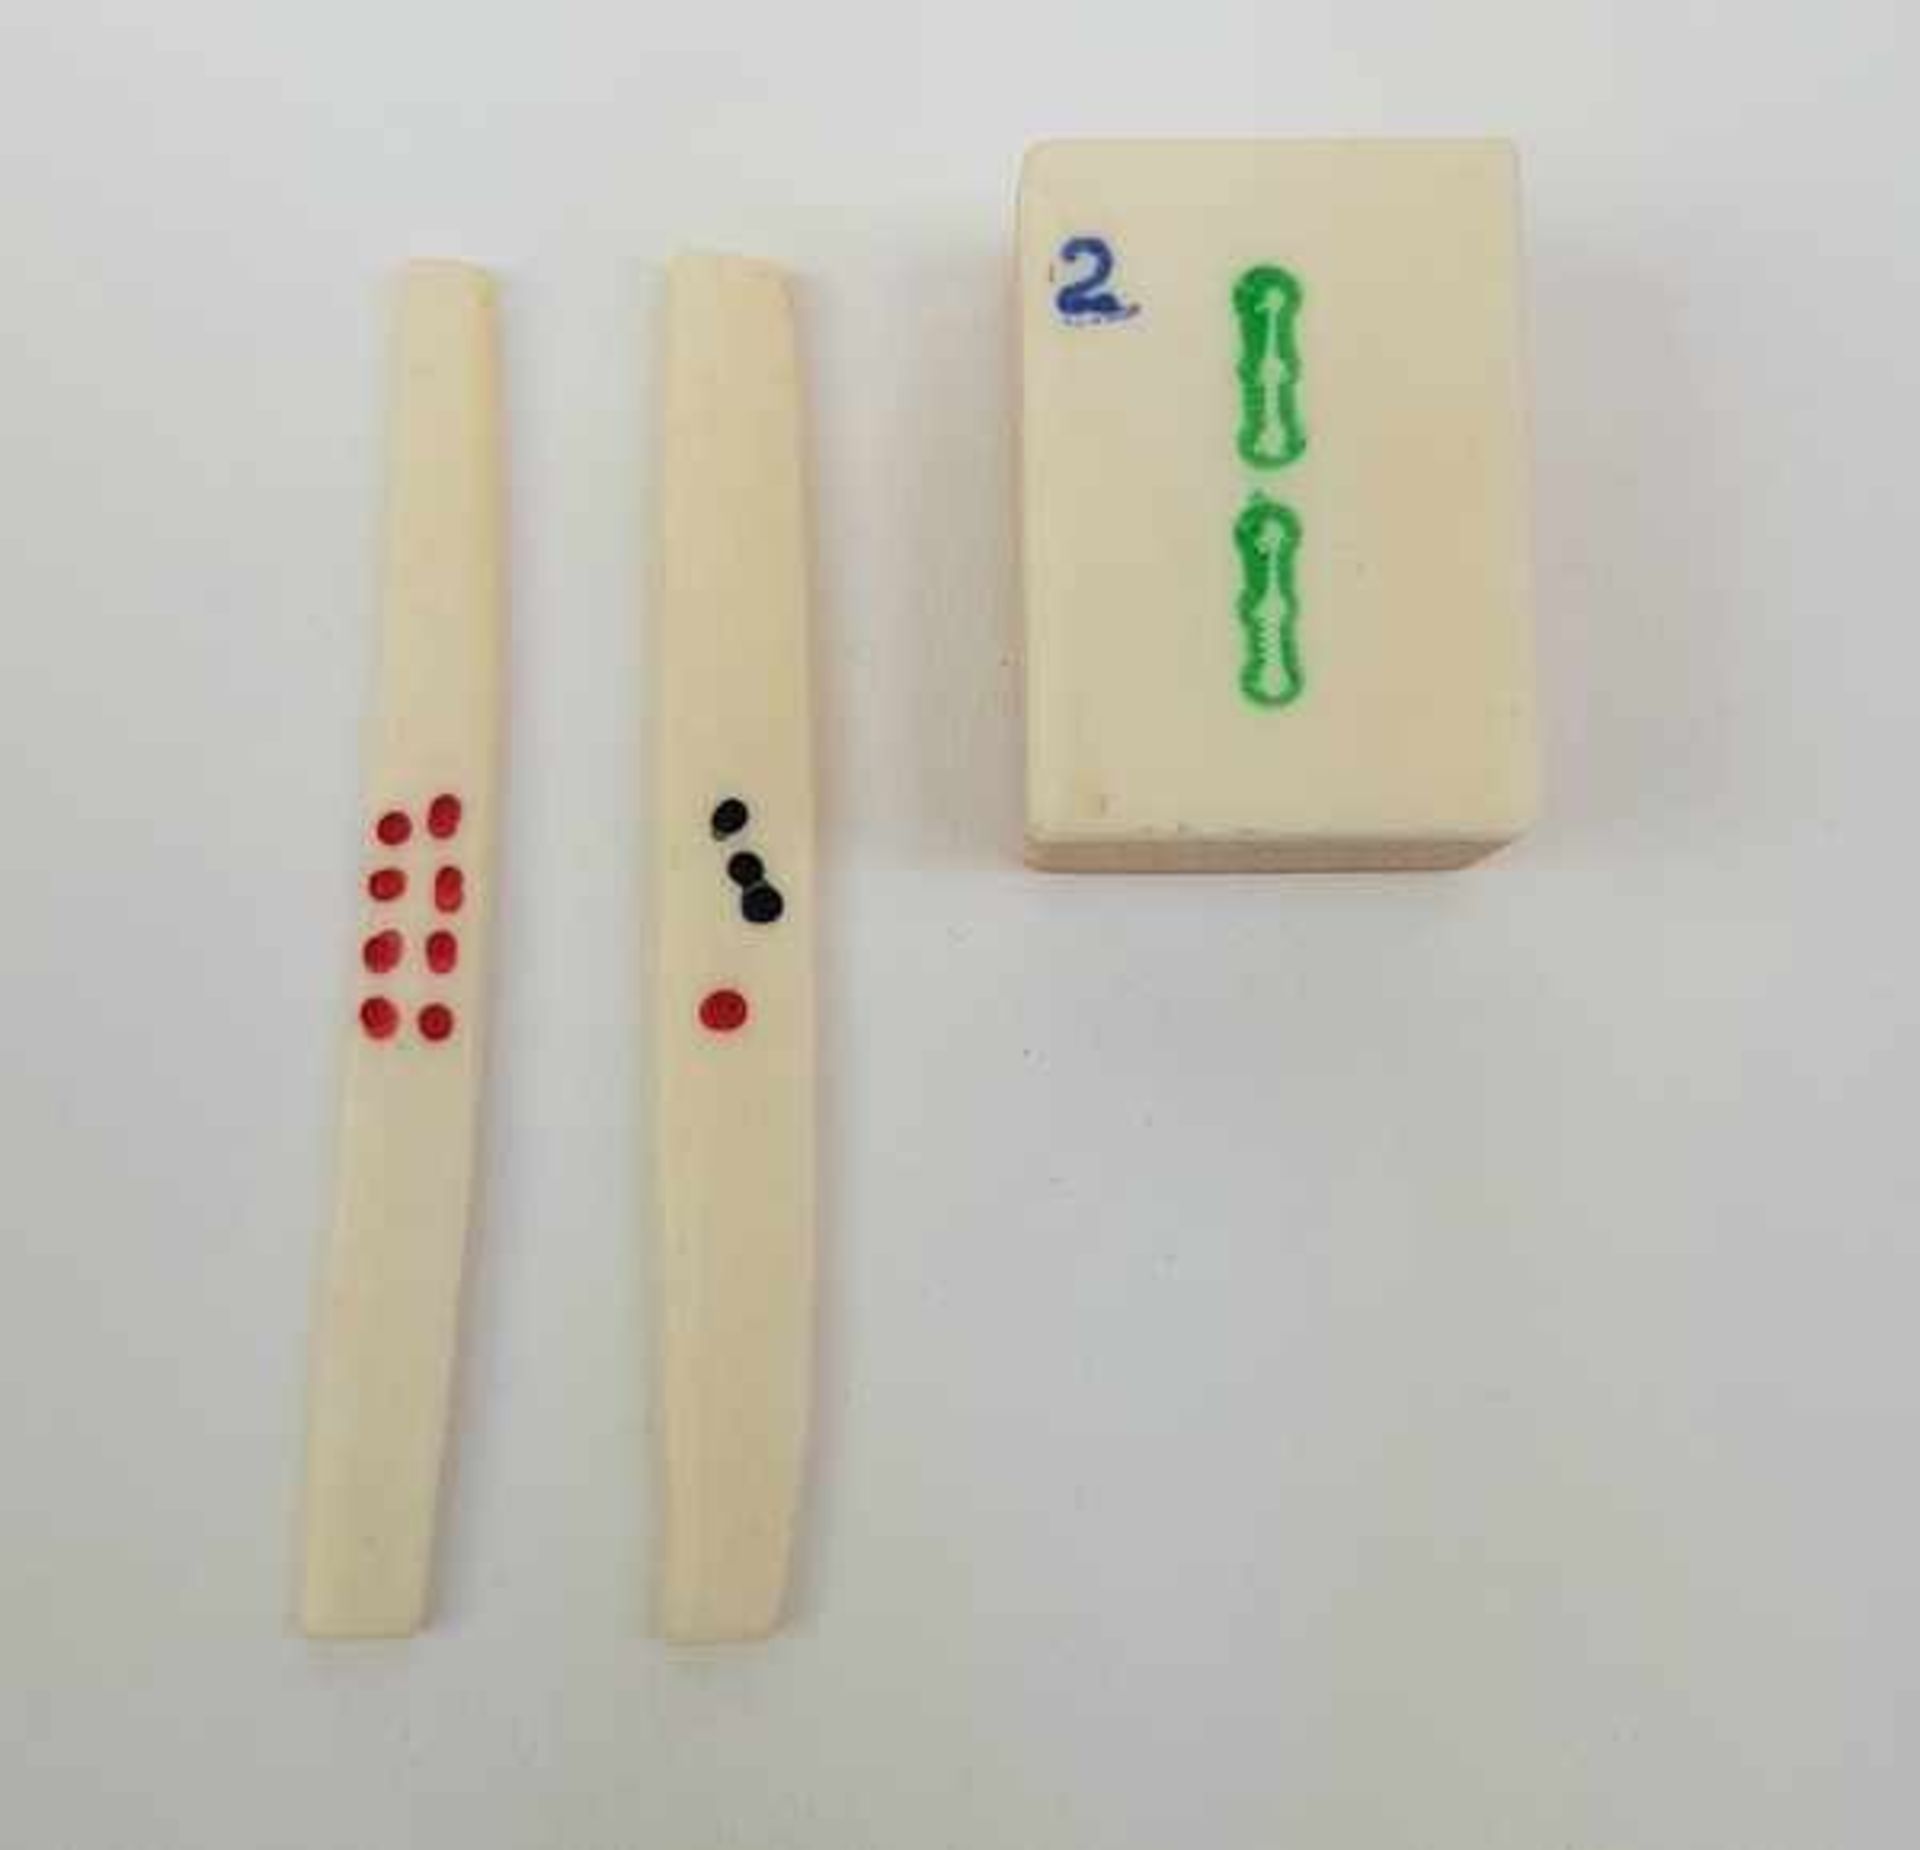 (Aziatica) Mah jongMah jong gezelschapsspel in orginele doos, bamboe stenen en benen rekenstokjes. - Bild 5 aus 6